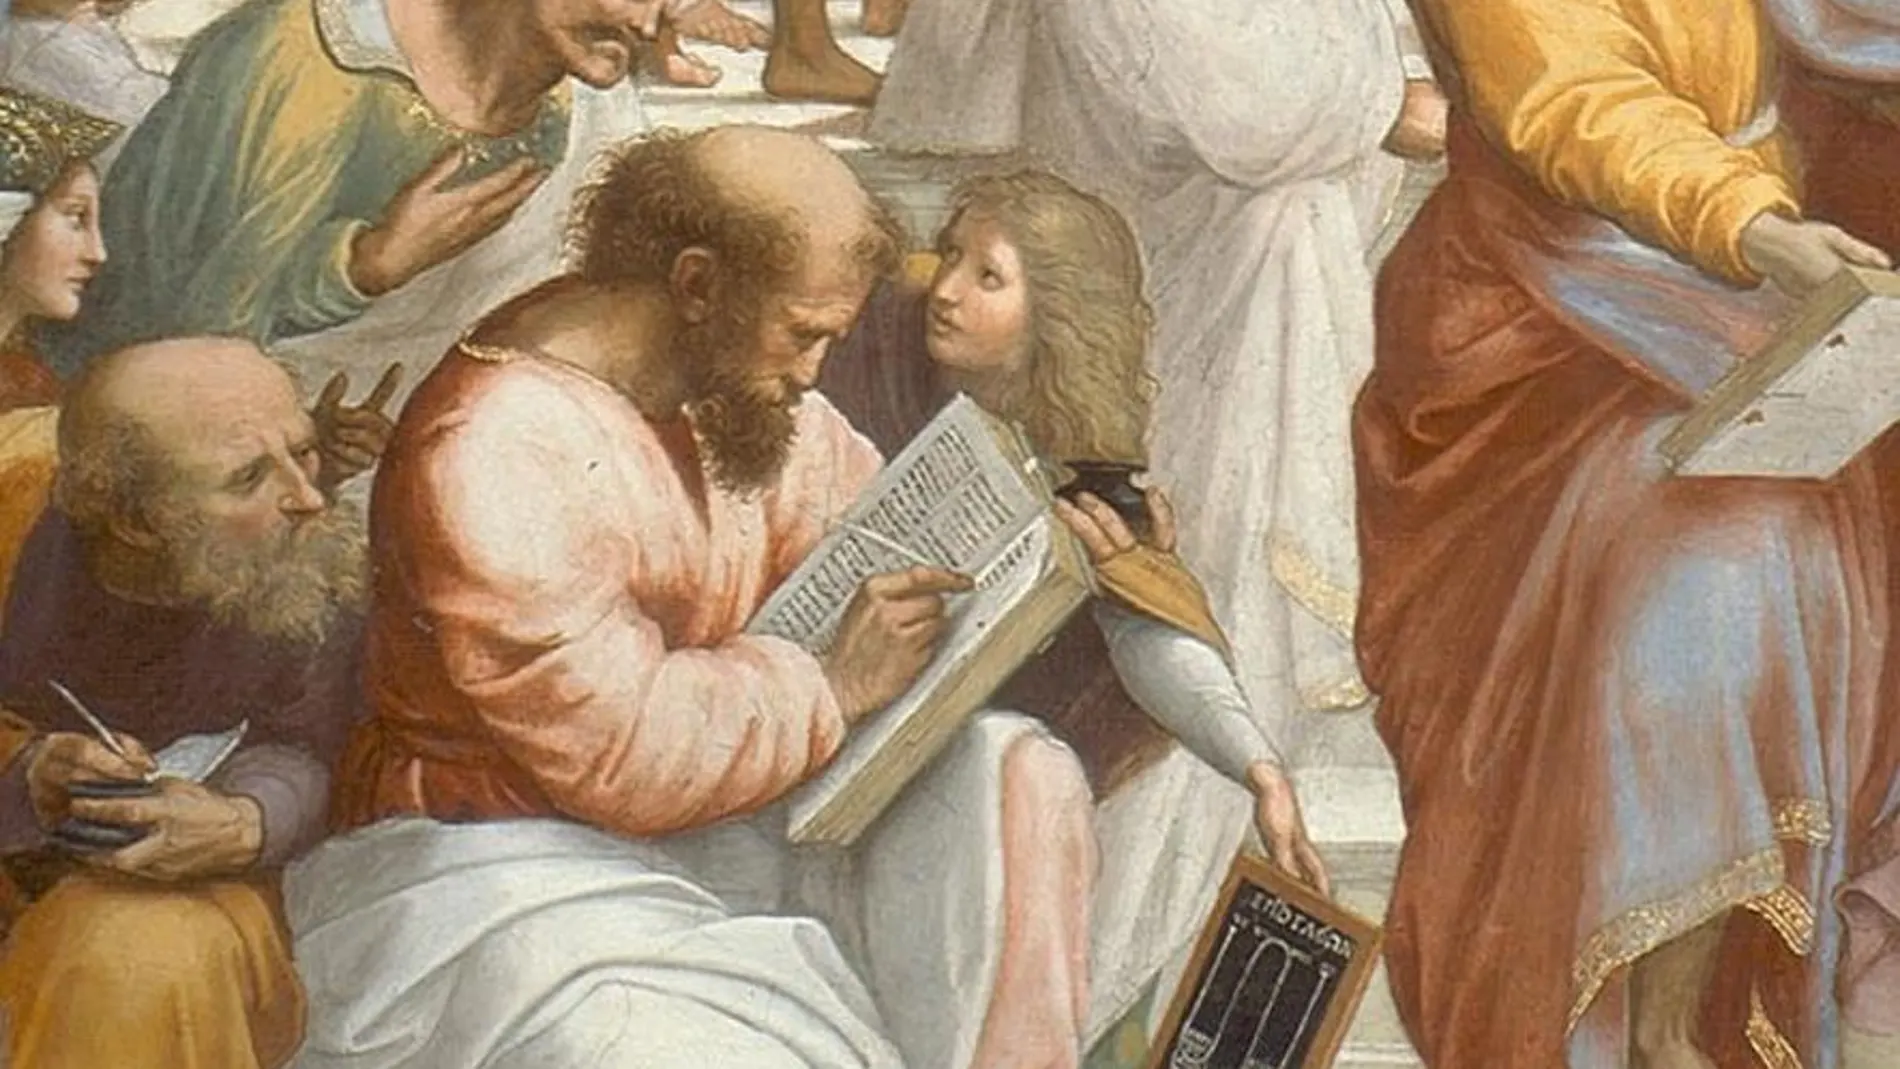 Pitágoras tomando notas. Recorte del fresco “La escuela de Atenas” de Rafael (1511)